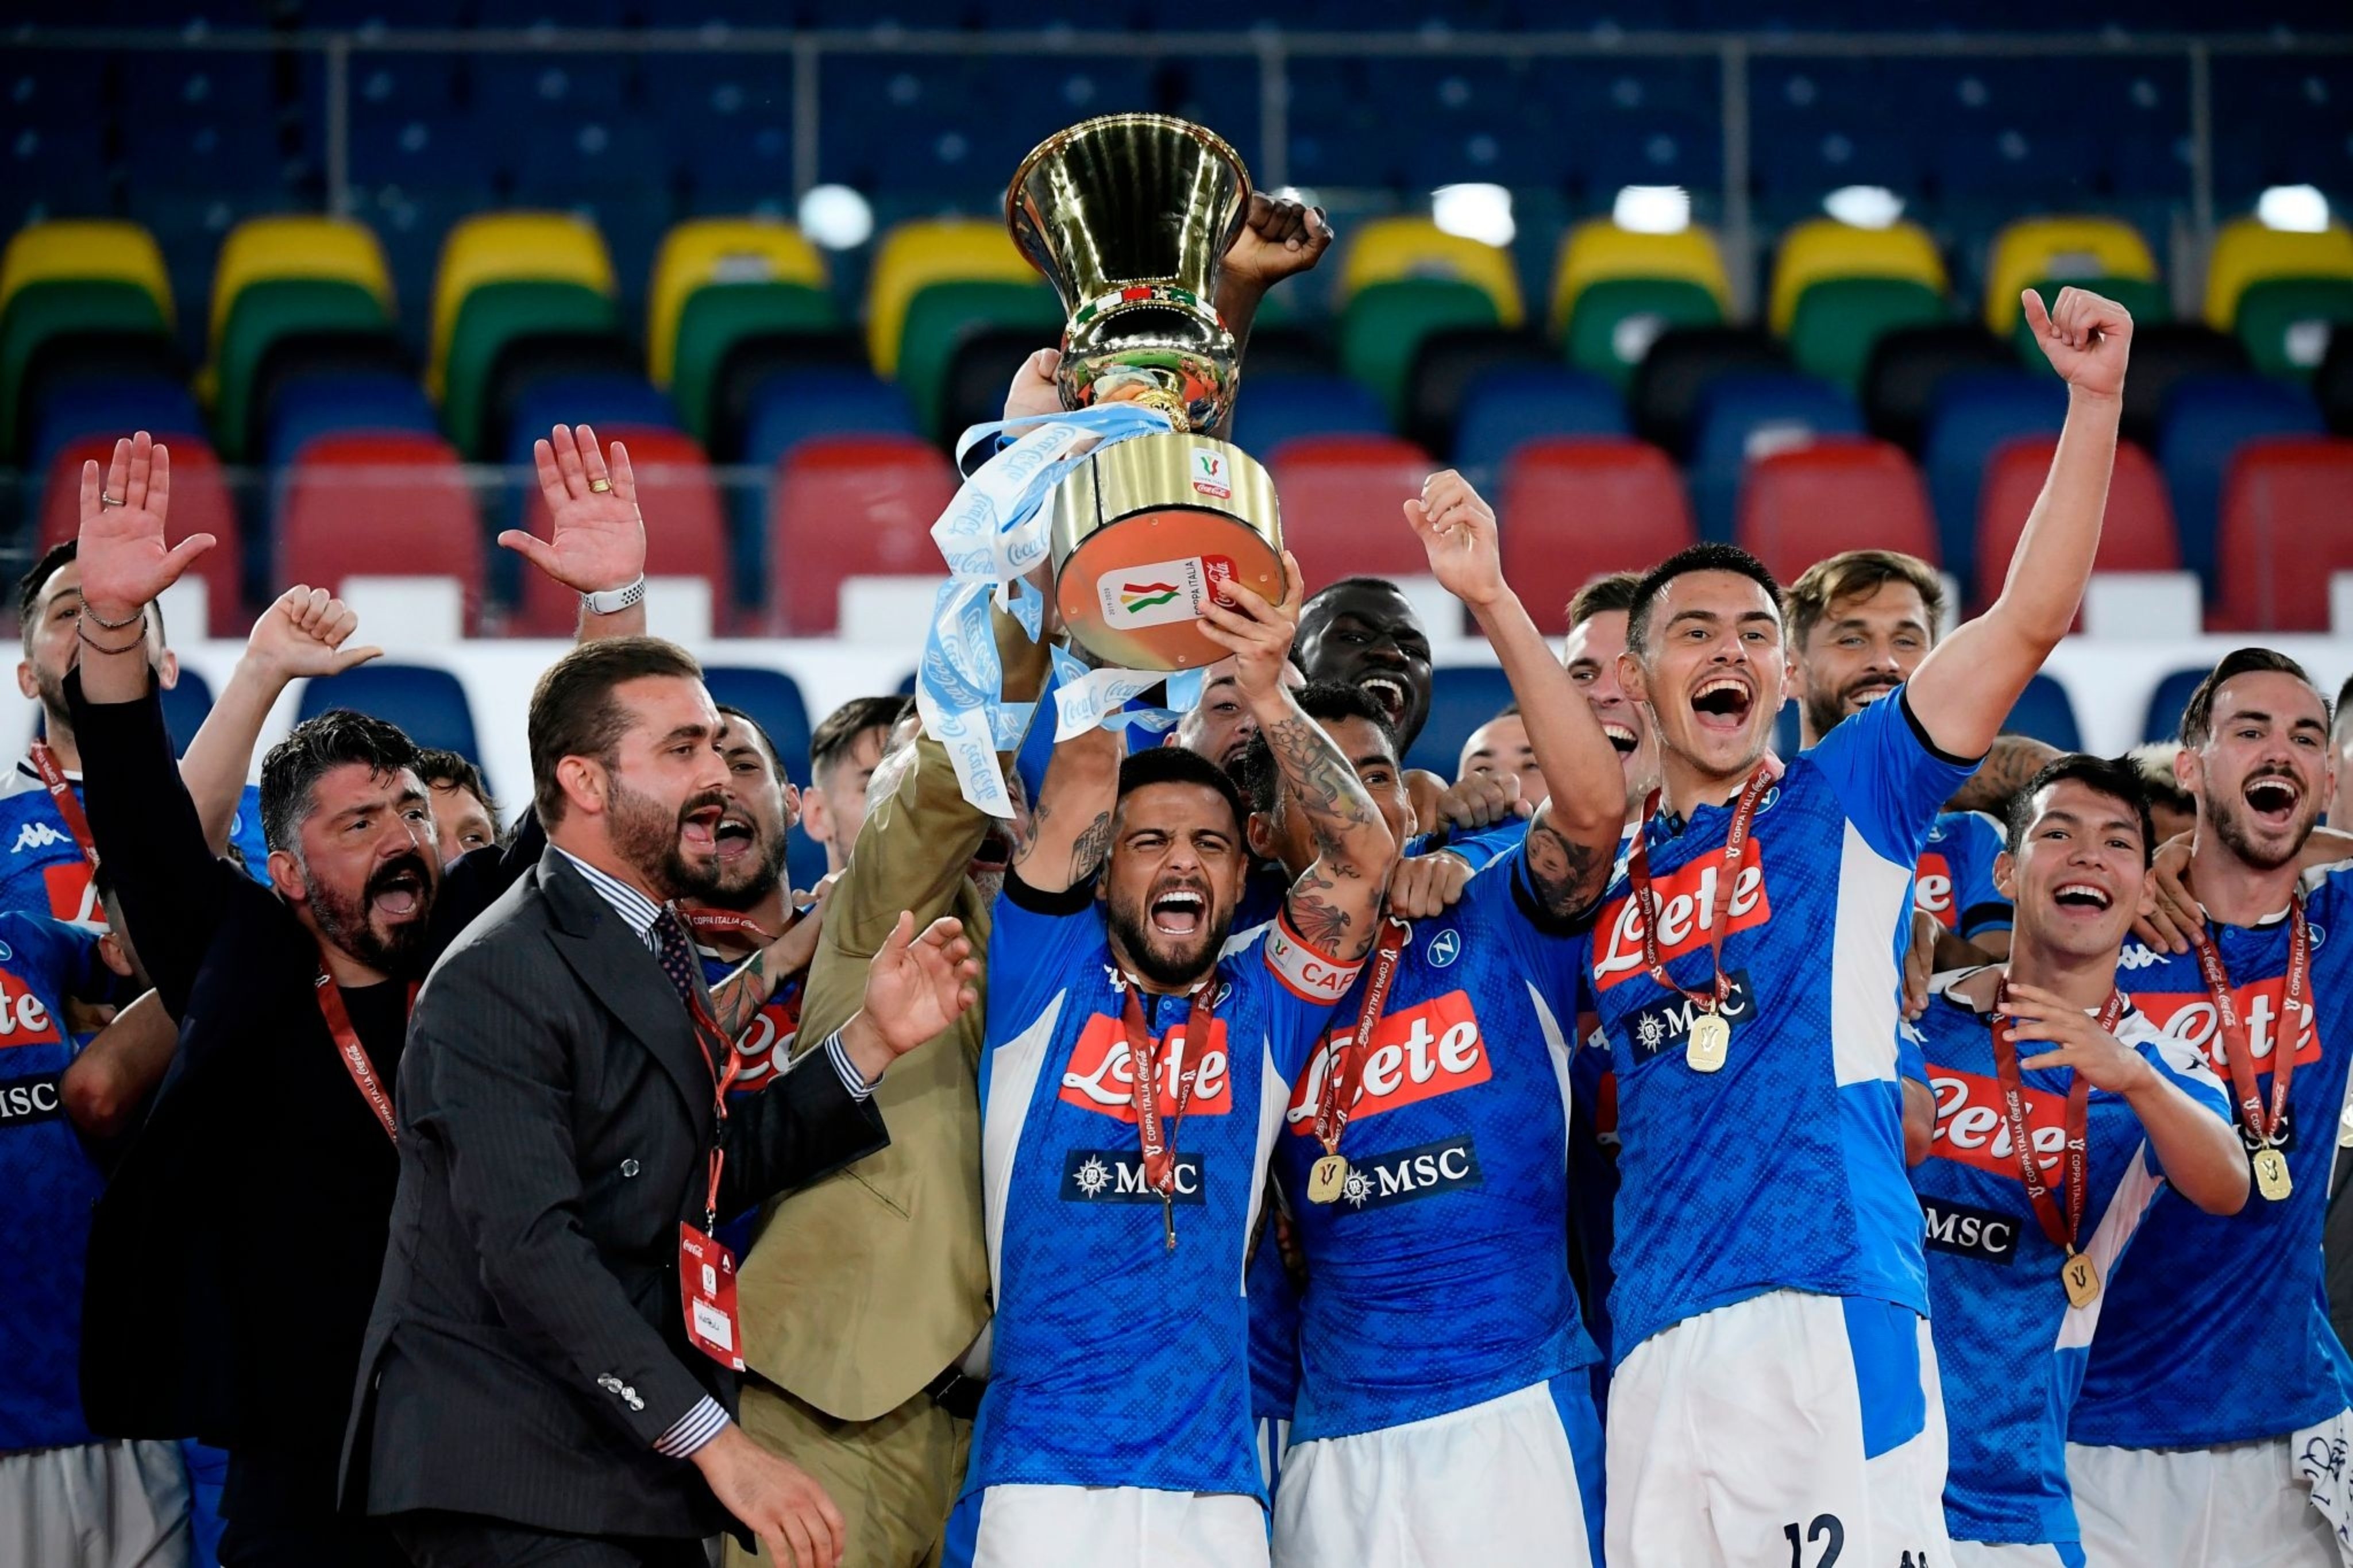 کوپا ایتالیا - Coppa Italia